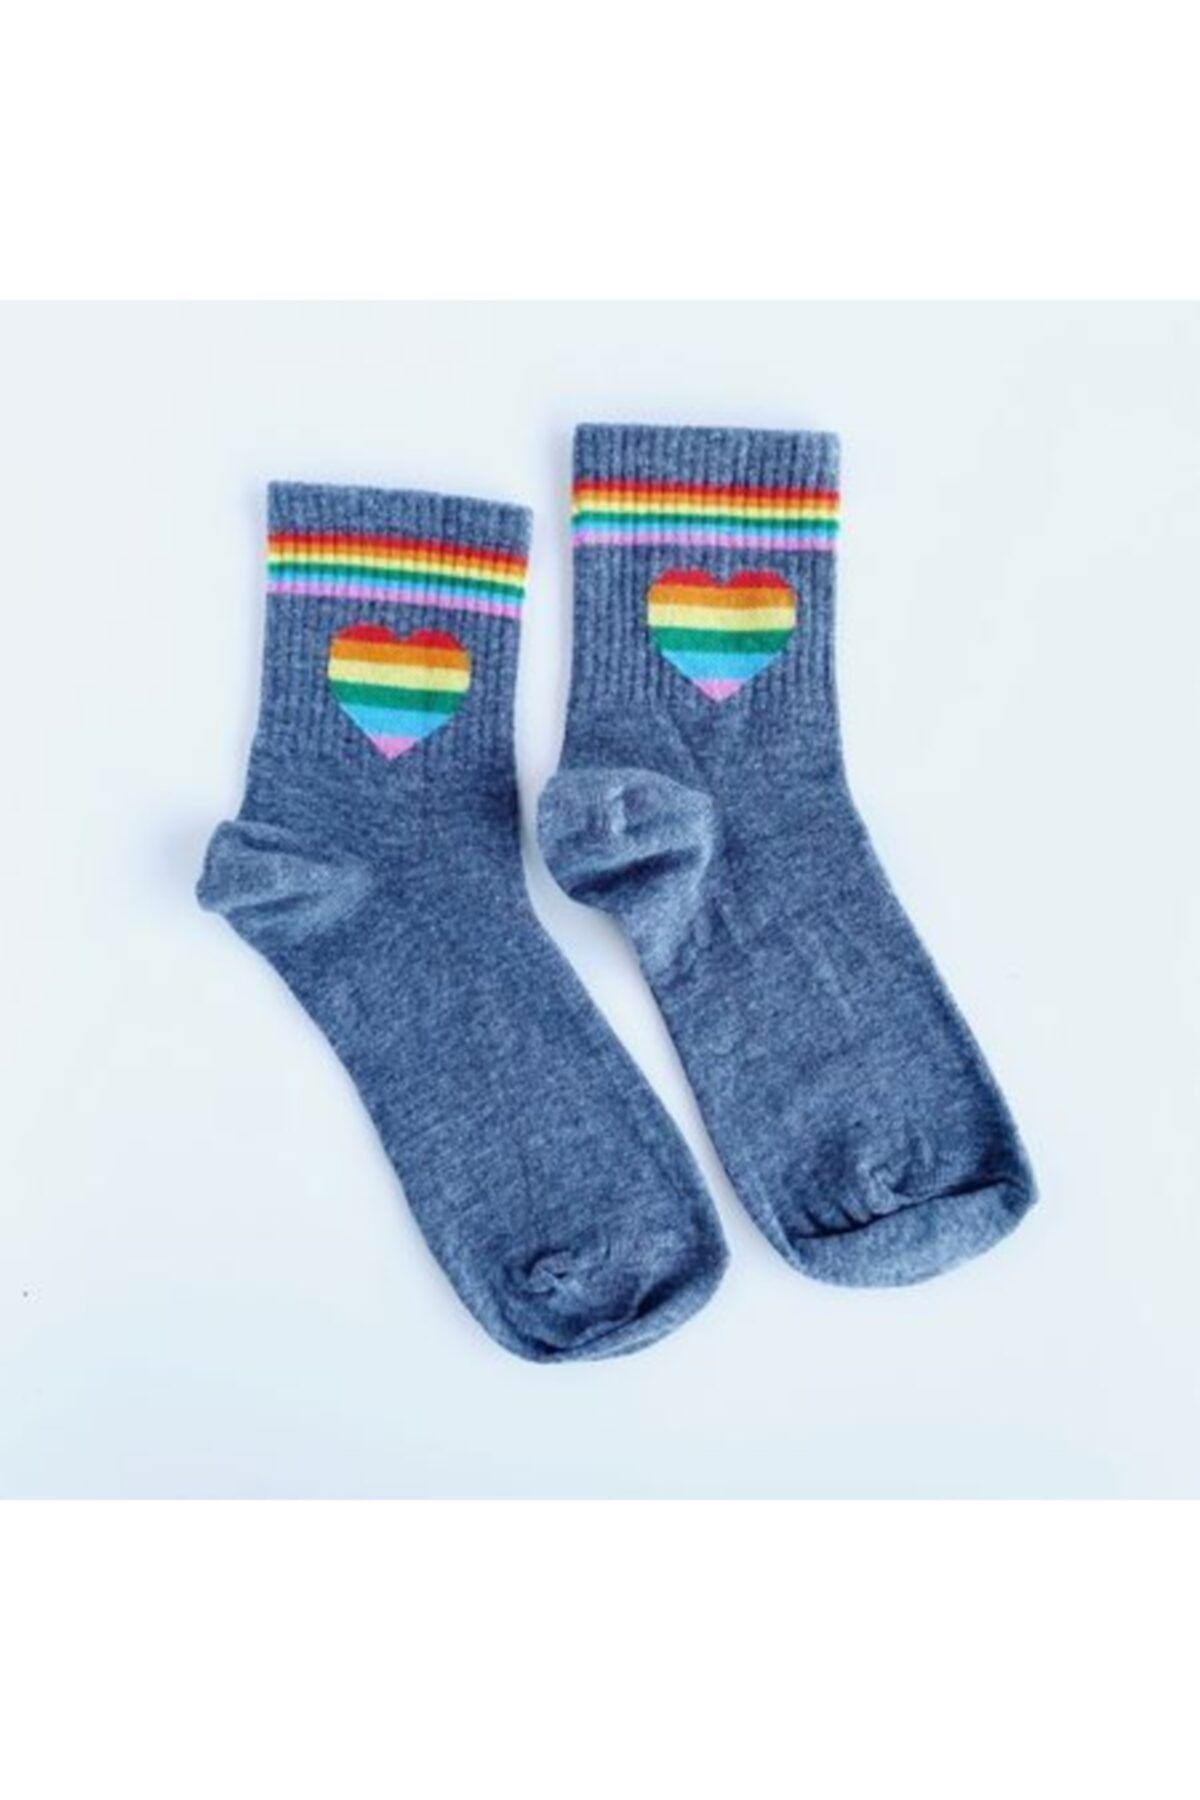 Bikutumutluluk Hediyelik - N136 - Rengarenk Renkli Kalp Gri Çorap